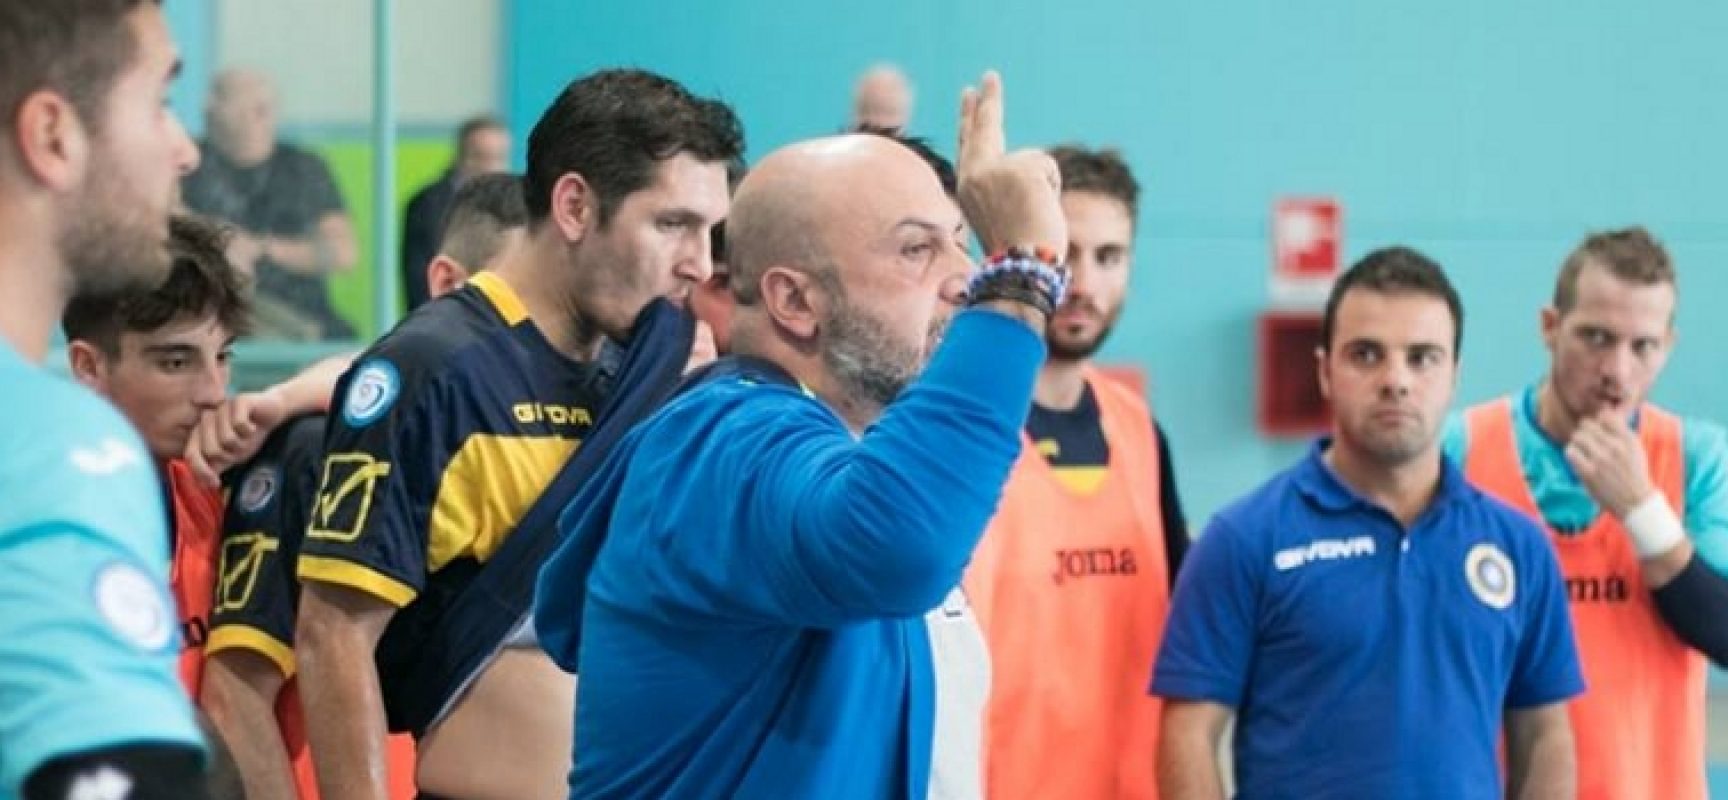 Futsal Bisceglie, parla mister Capursi: “Continuiamo a lavorare per la salvezza”